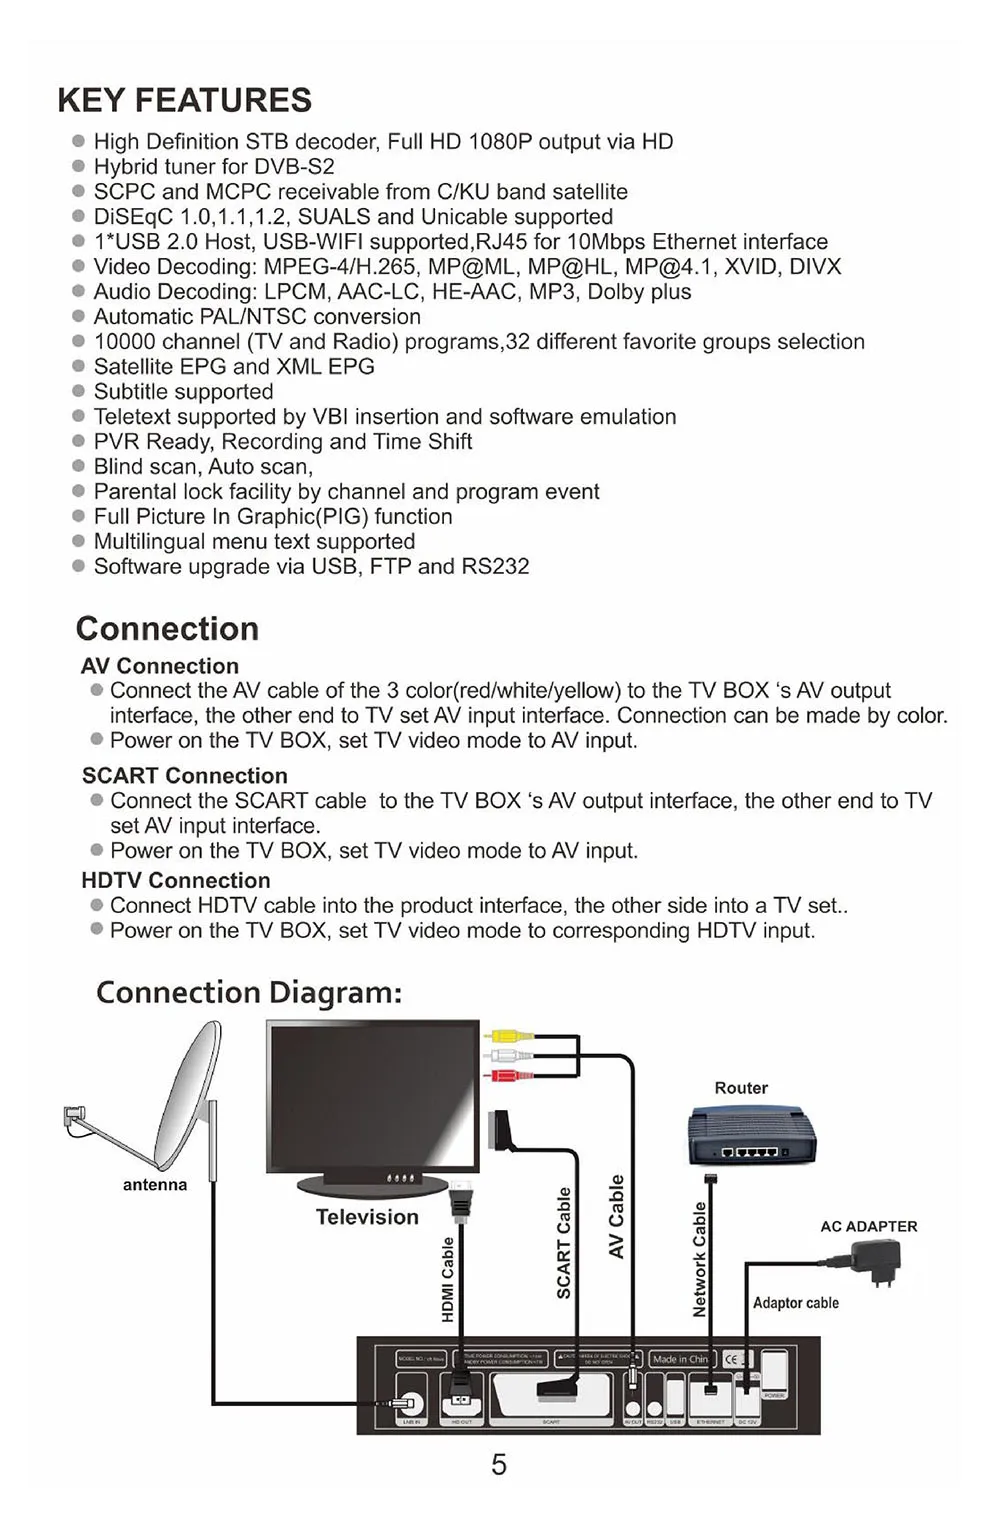 Европа 2 года Cccam GTMedia DVB S2 V8 Nova спутниковый приемник ТВ BOX Поддержка H.265, AC3, YouTube, Bisskey, IPTV Set-top BOX